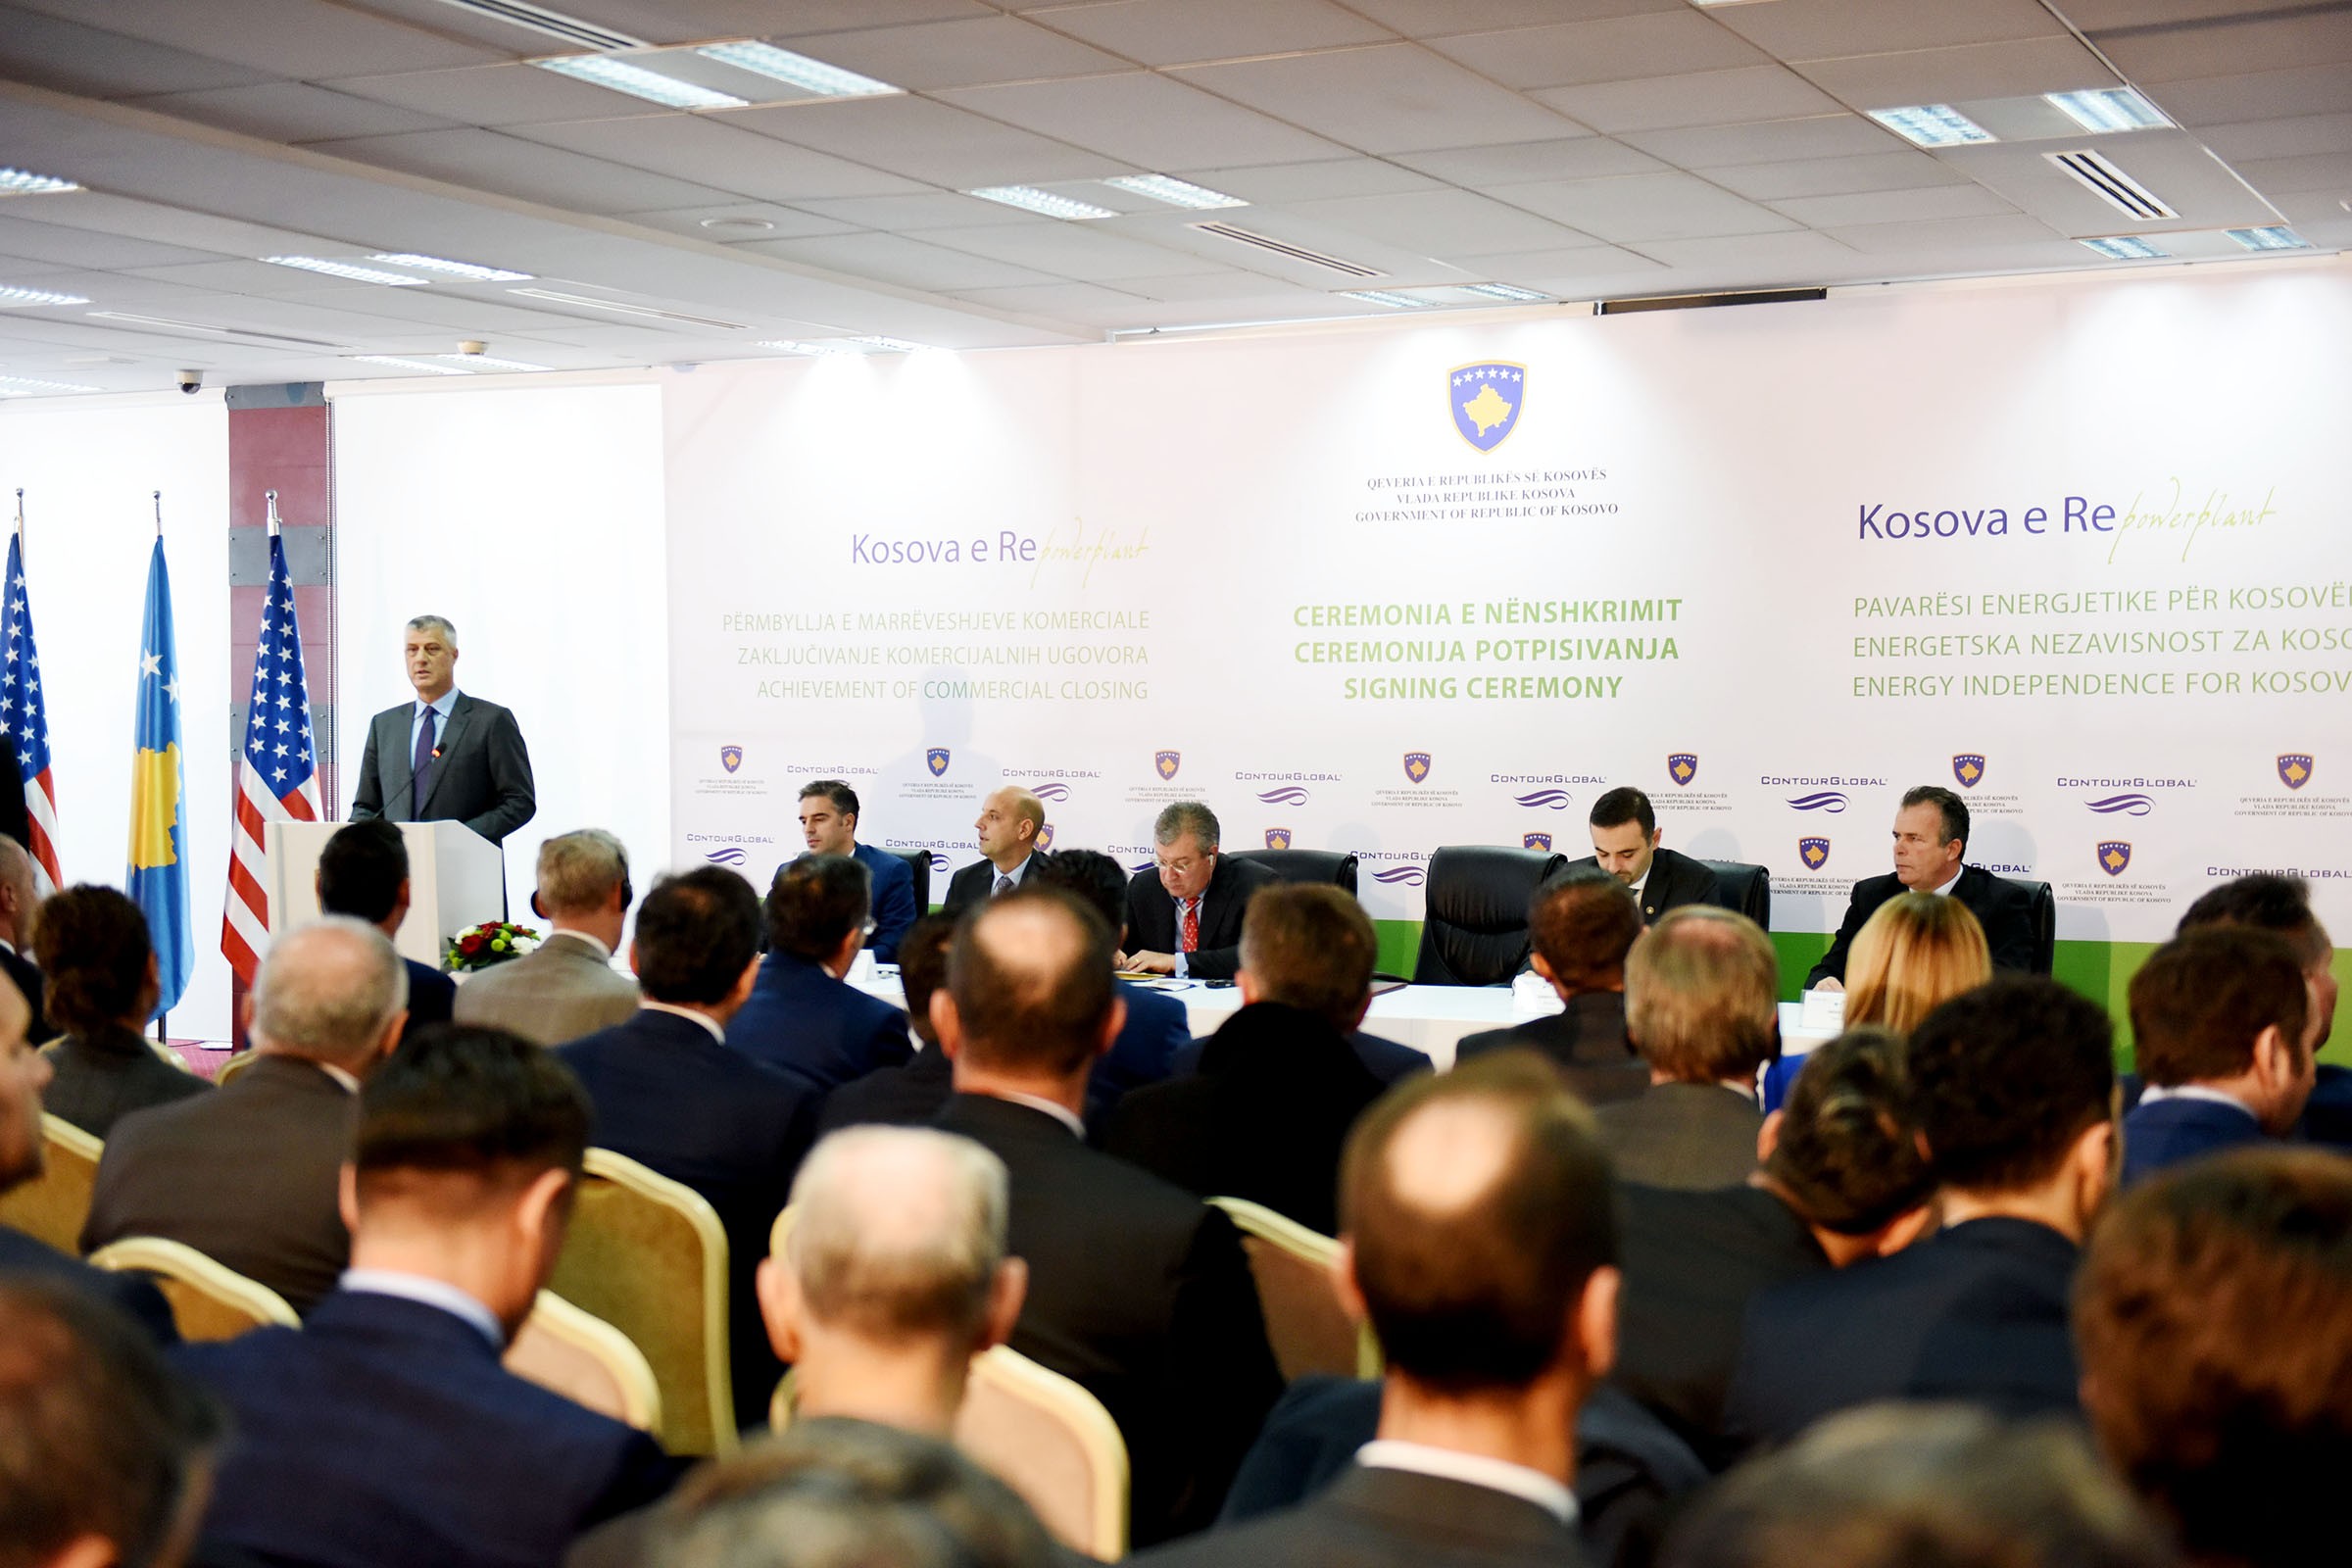 Marrëveshja për TC “Kosova e Re” i siguron pavarësi energjetike Kosovës